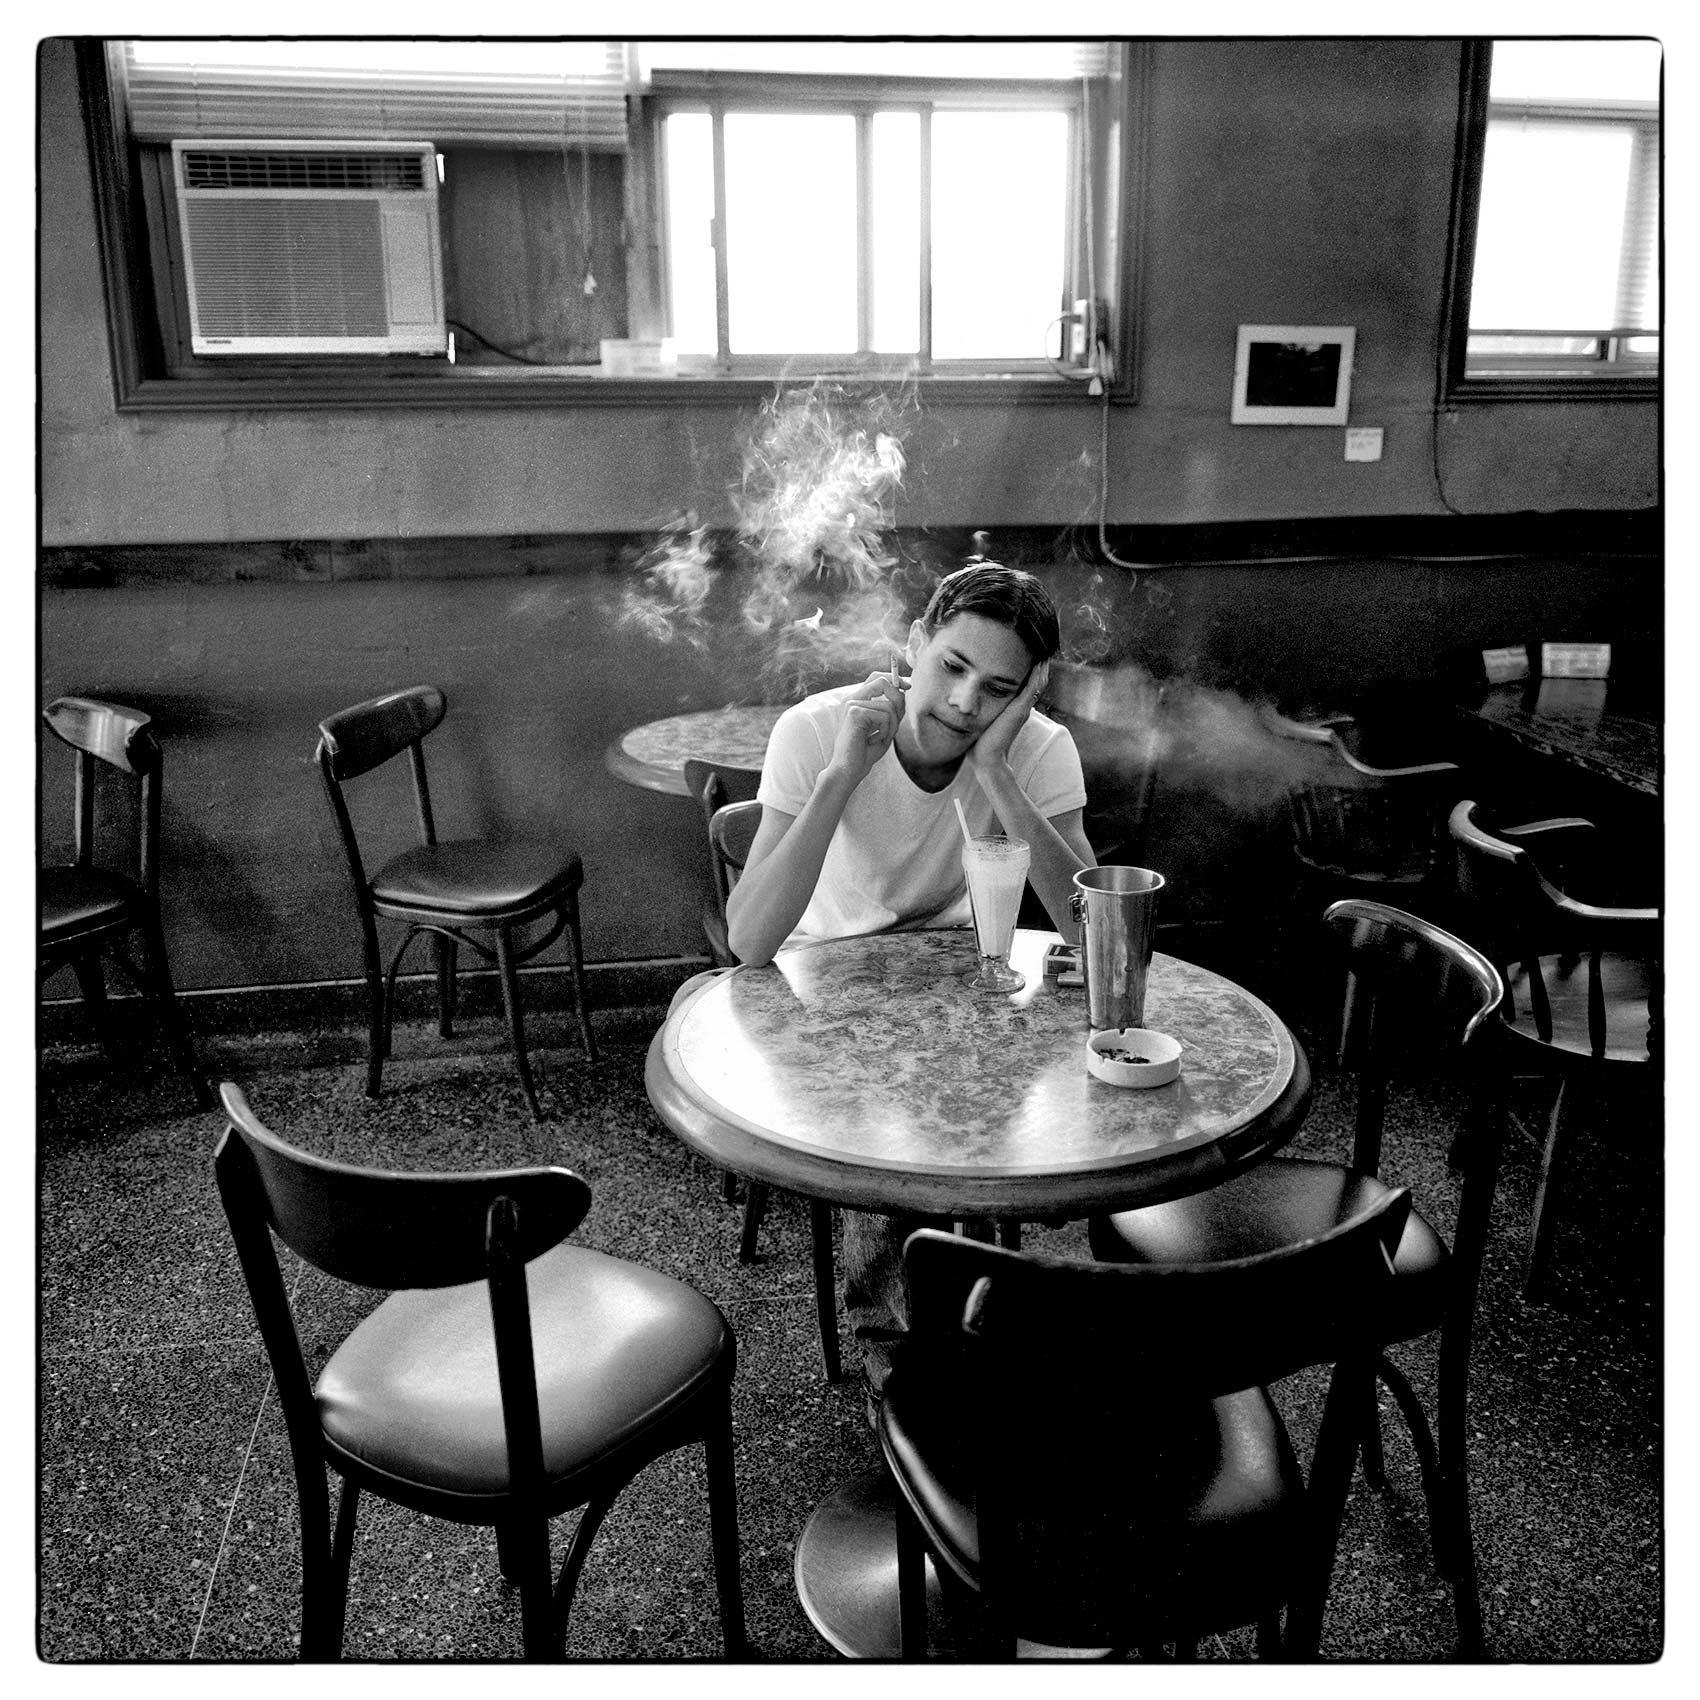 a-man-named-ebi-schonle-smokes-a-cigarette-in-a-munich-coffee-shop